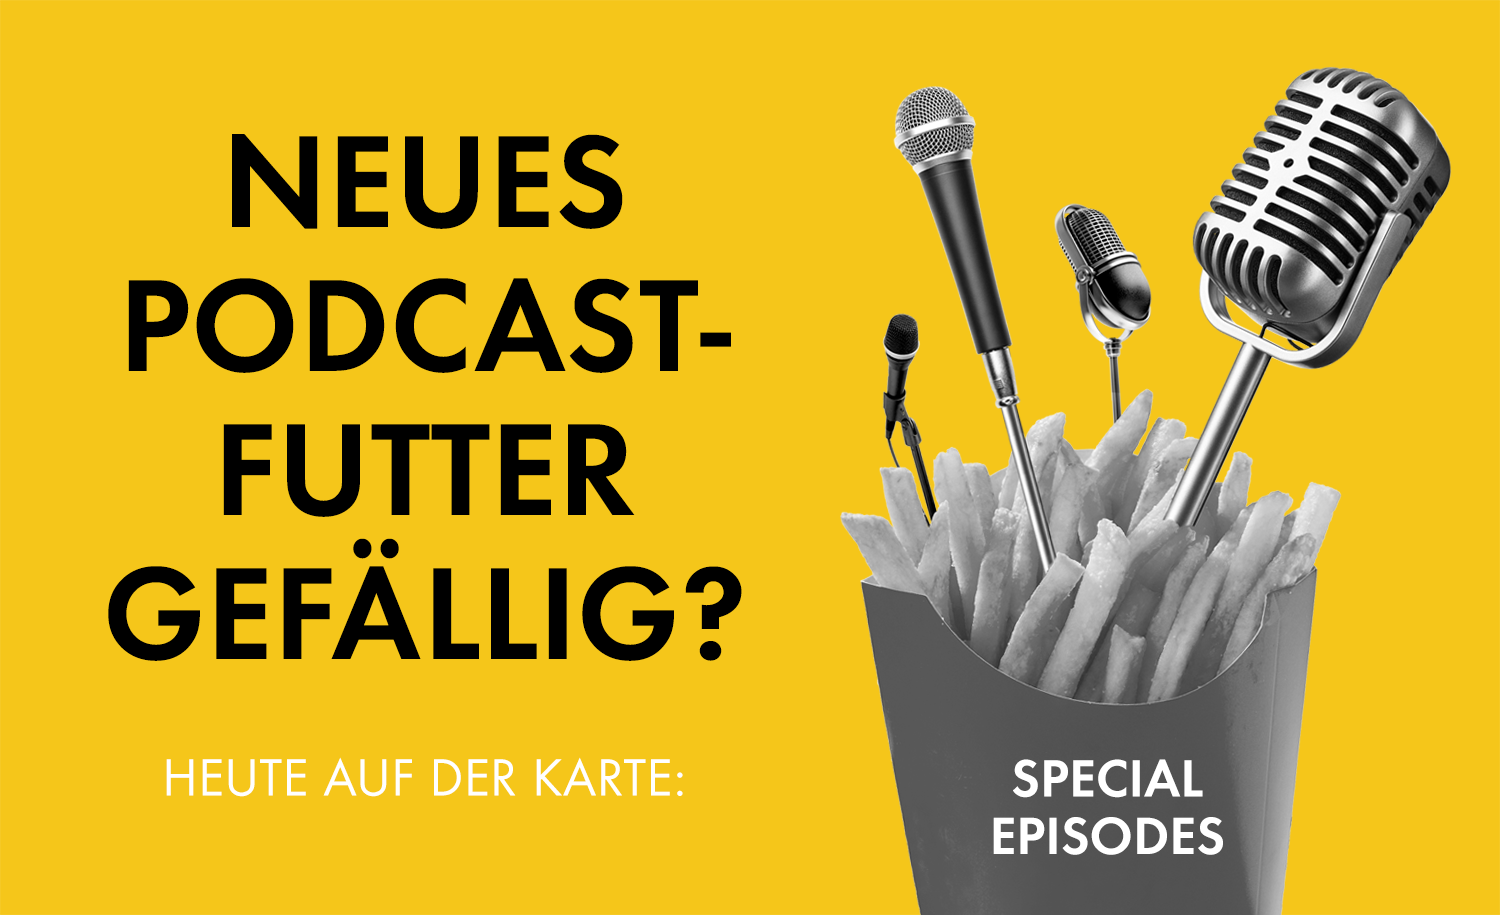 Podcast-Tipps zum Wochenende: Special Episodes